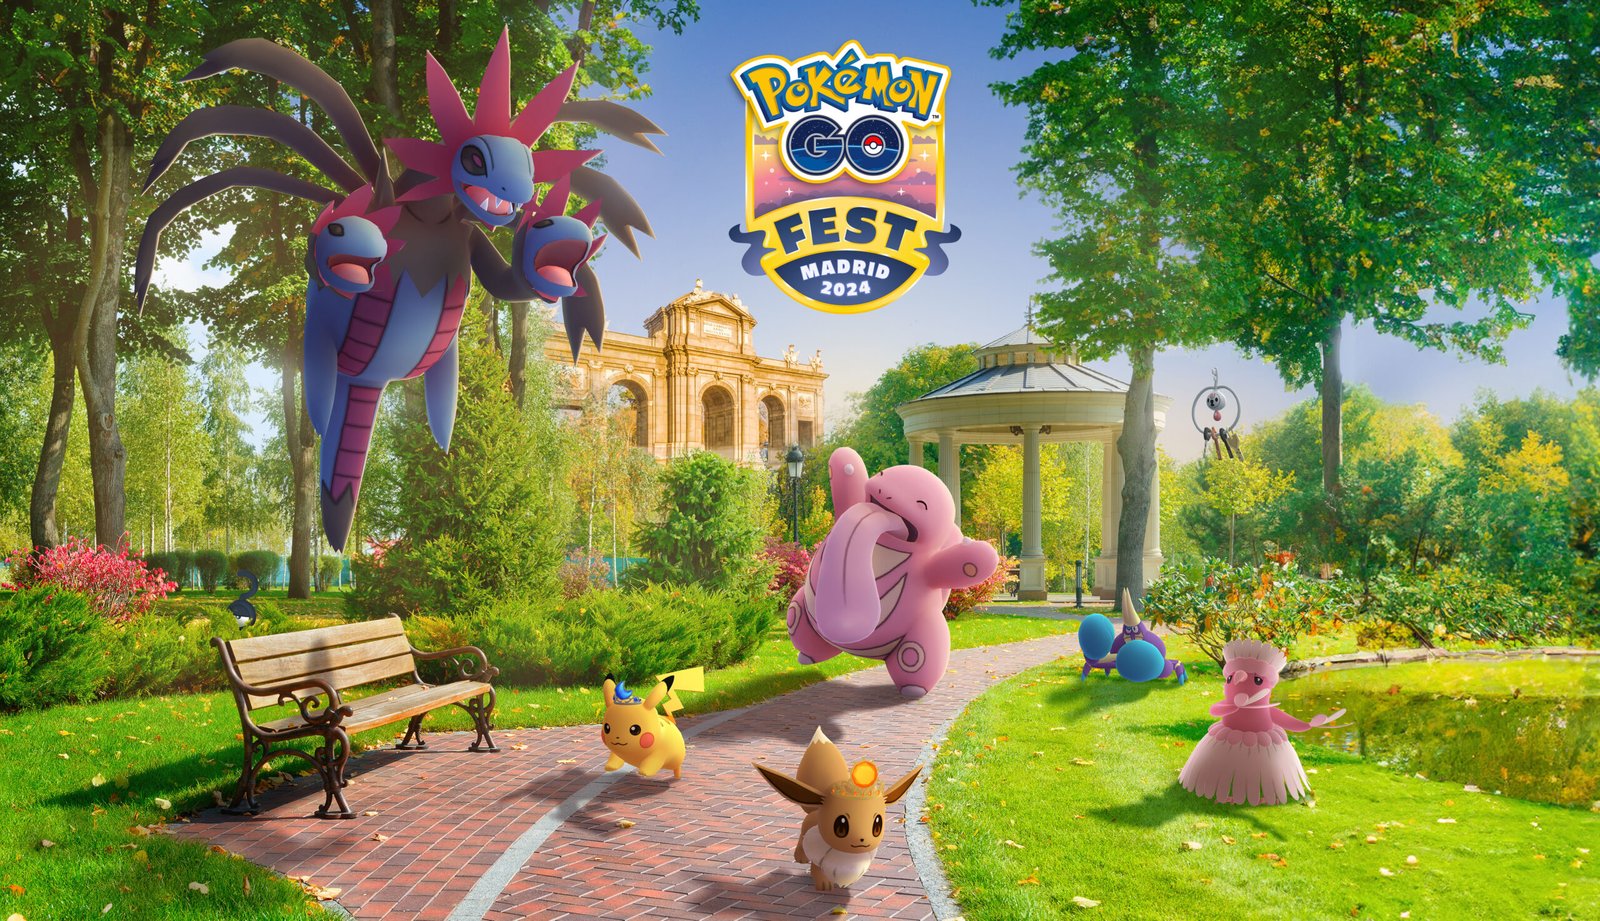 La ciudad de Madrid, sede del festival GO Fest, ofrece rutas gratuitas para cazar Pokémon